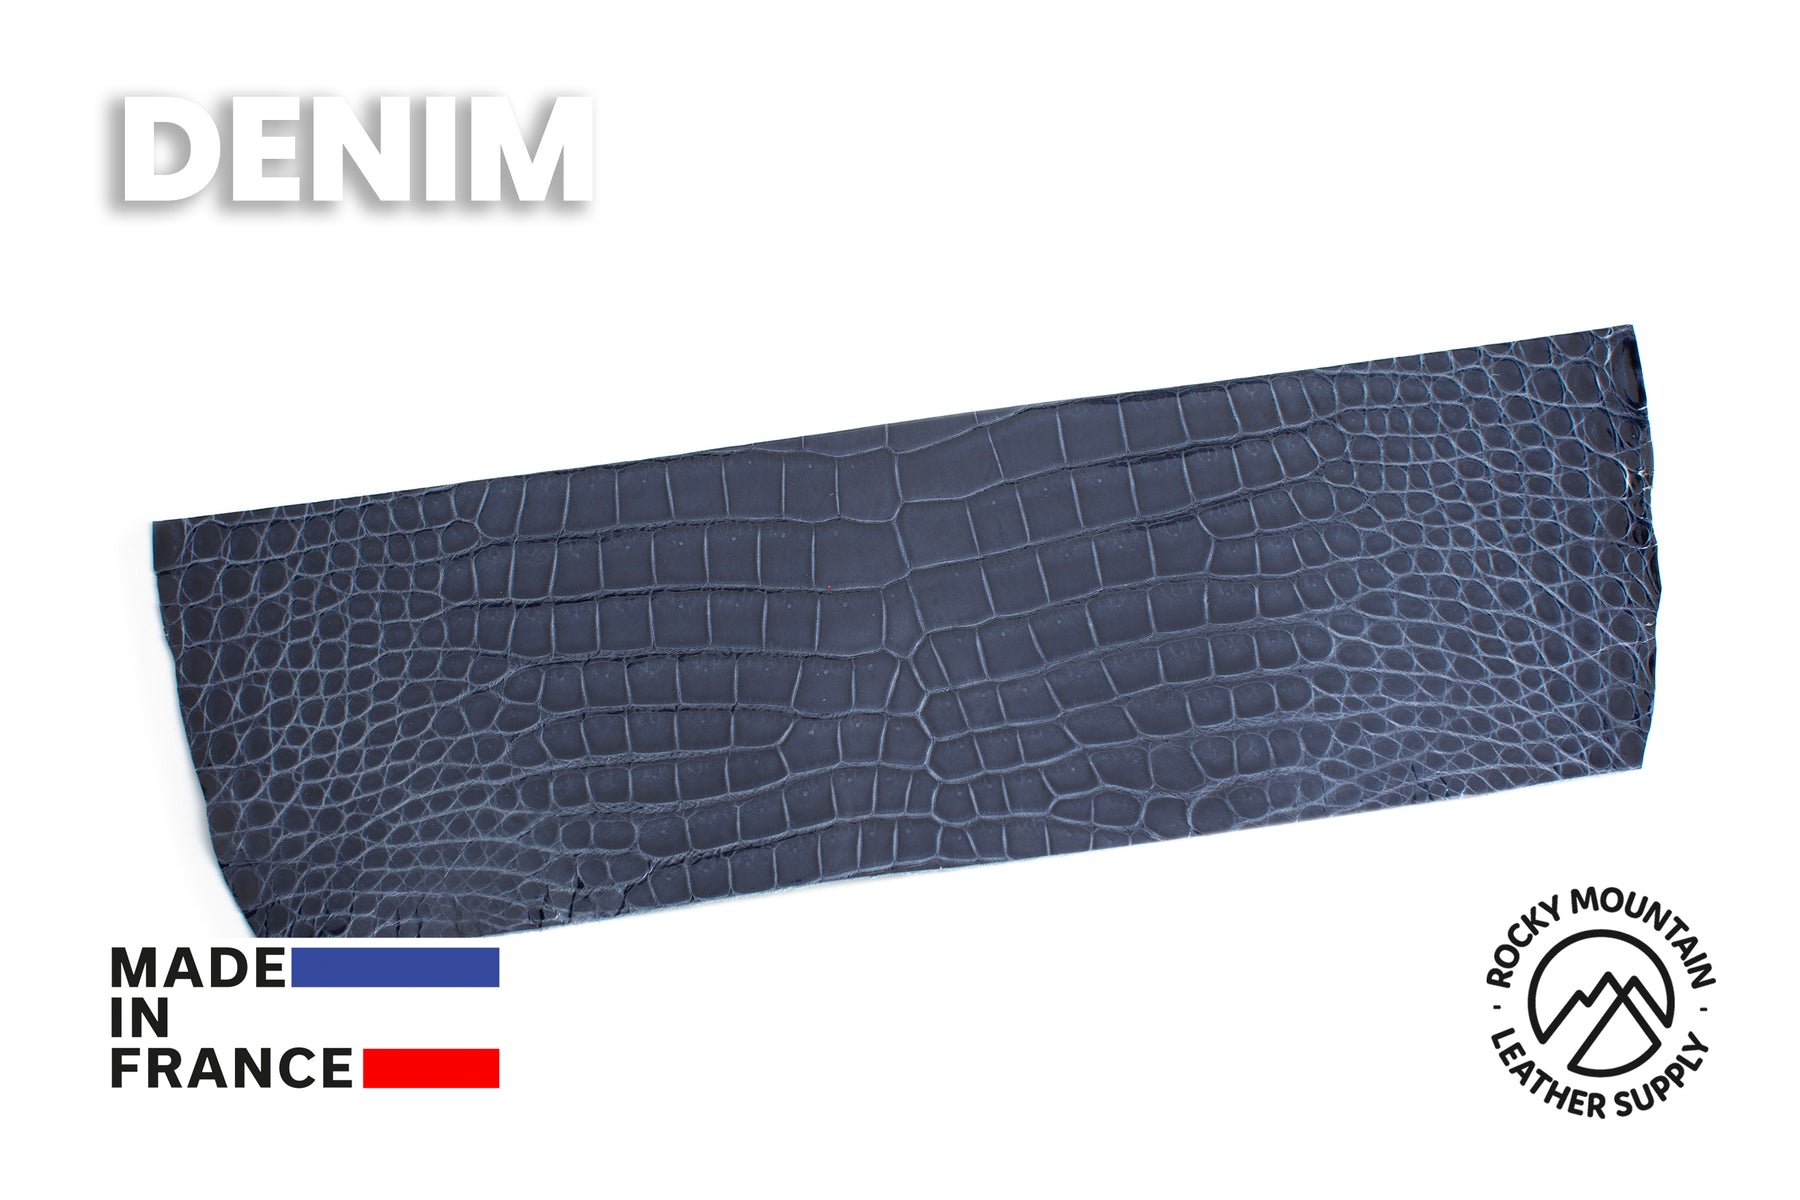 Porosus Crocodile - Glazed - Luxury Skins (PANELS)